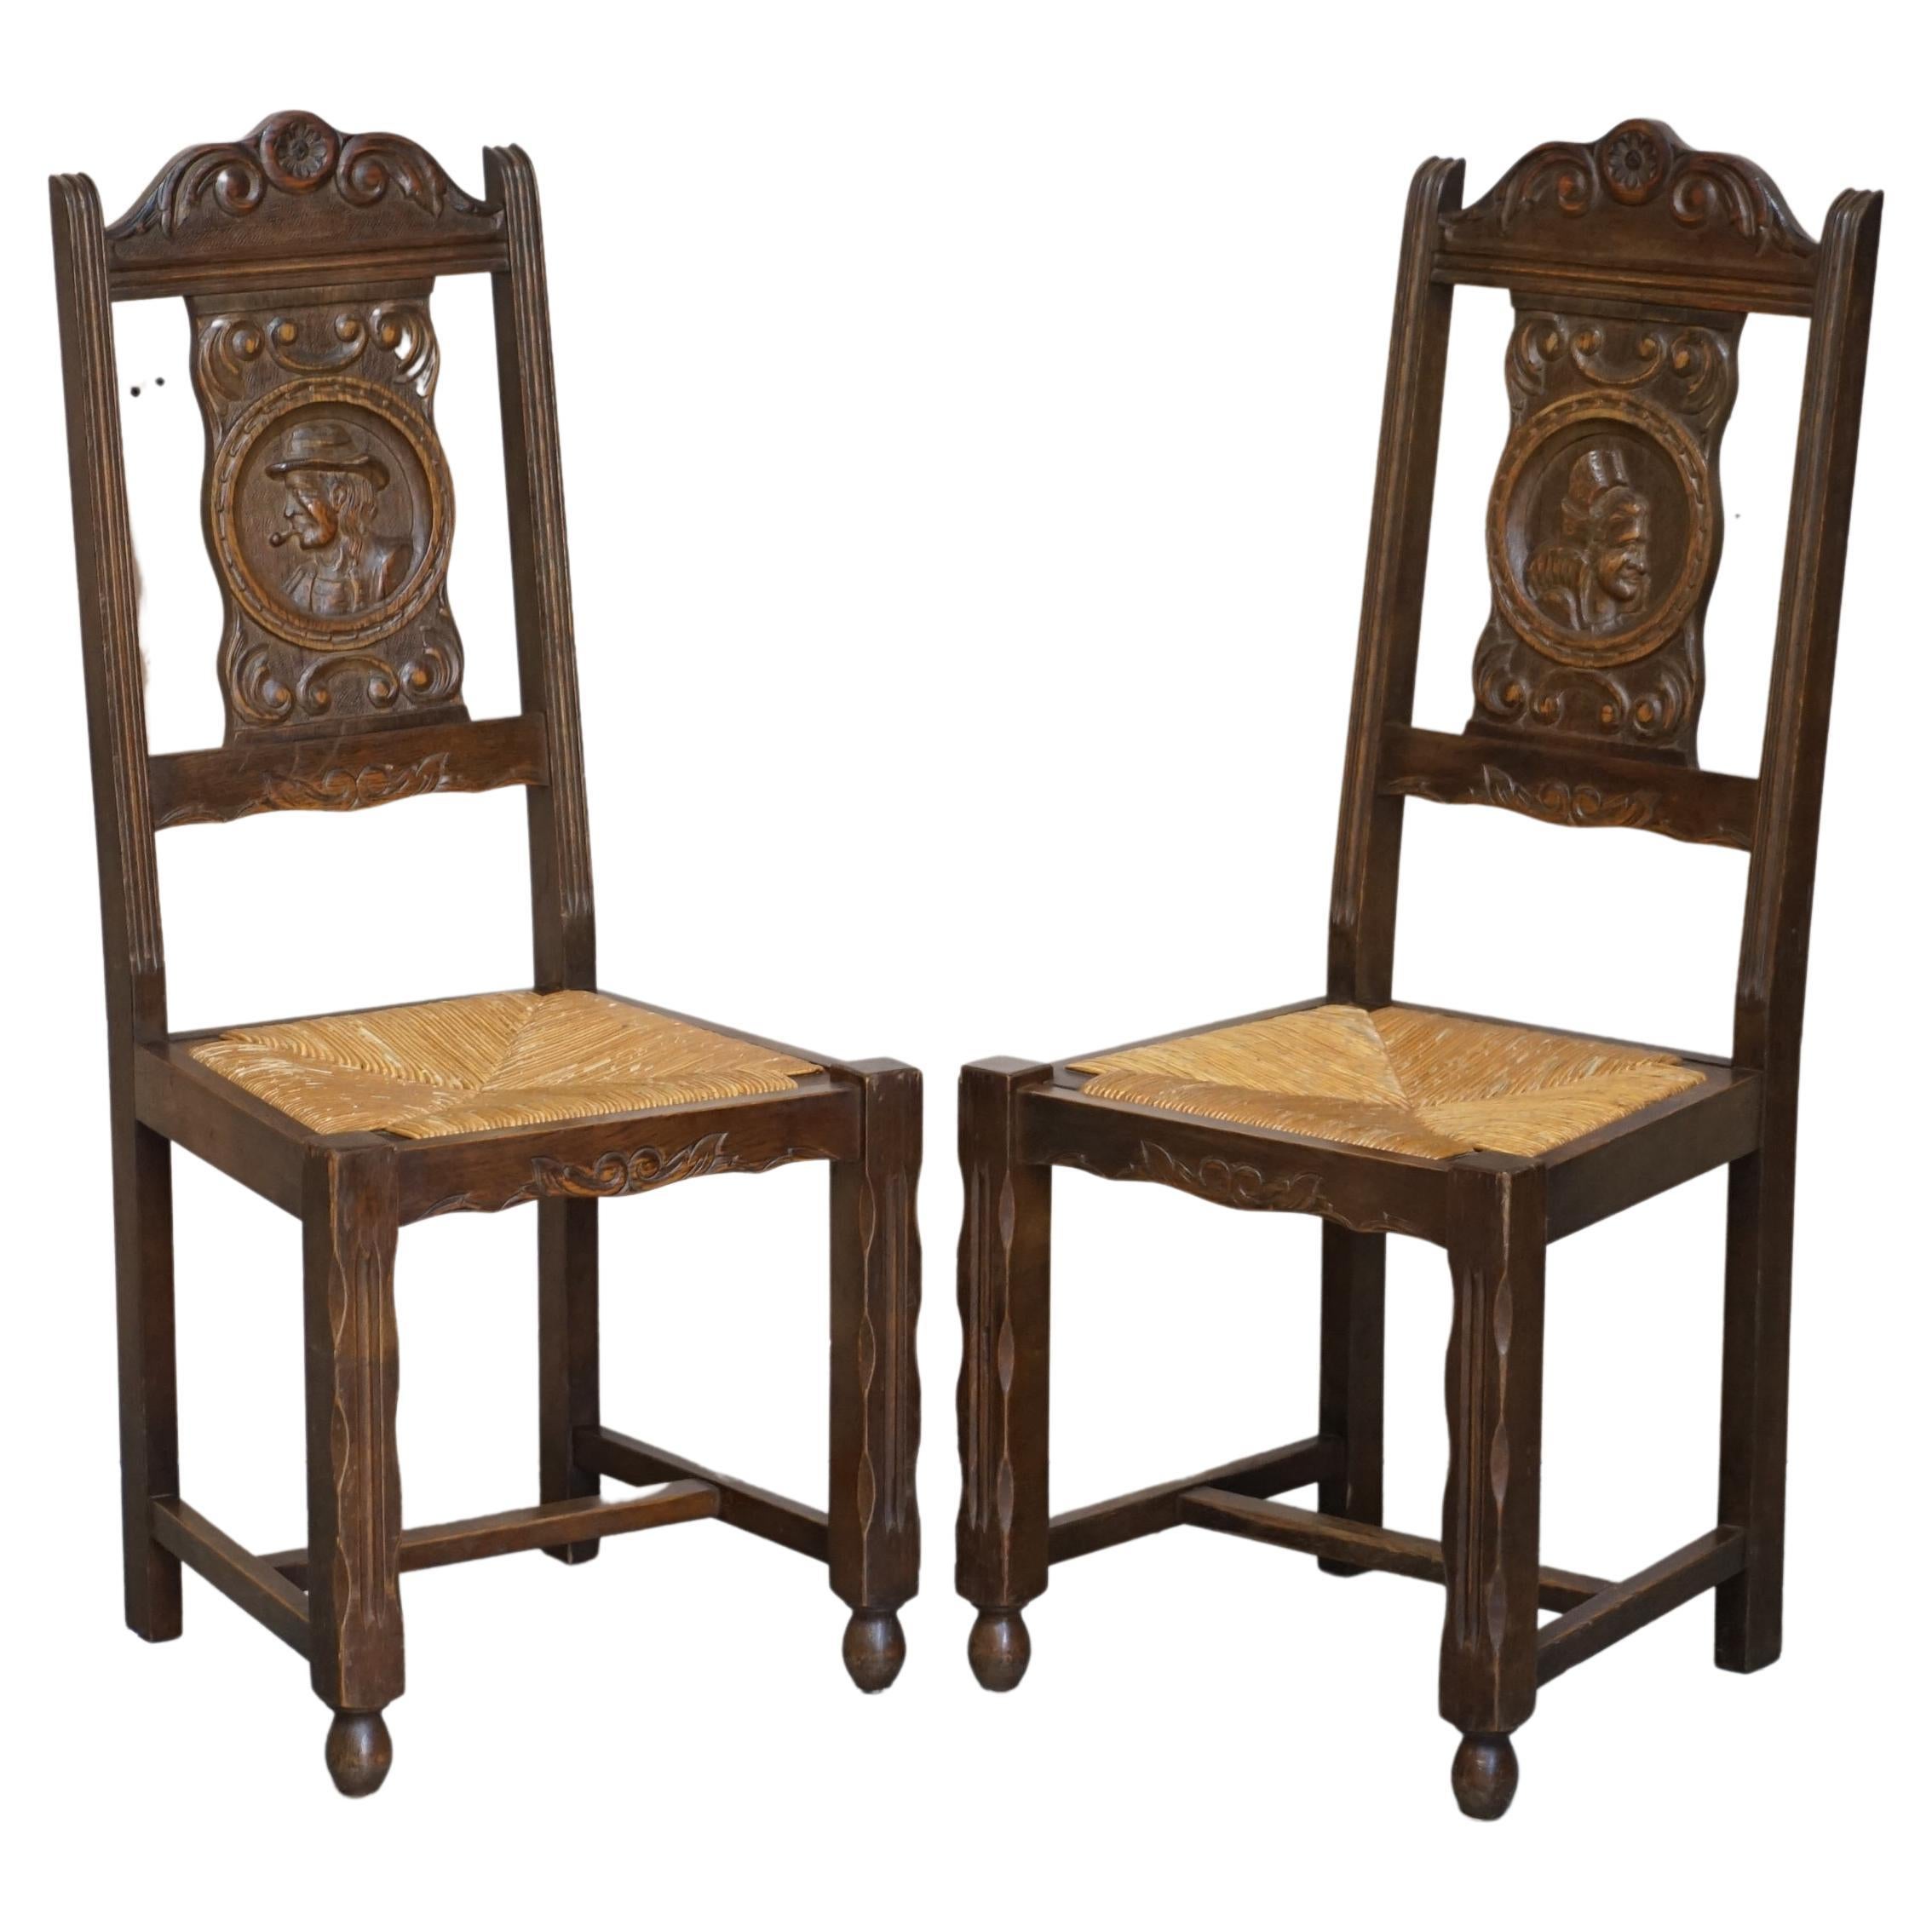 Superbe paire de chaises bretonnes en chêne sculpté à la main et à assise en jonc, datant de 1920.